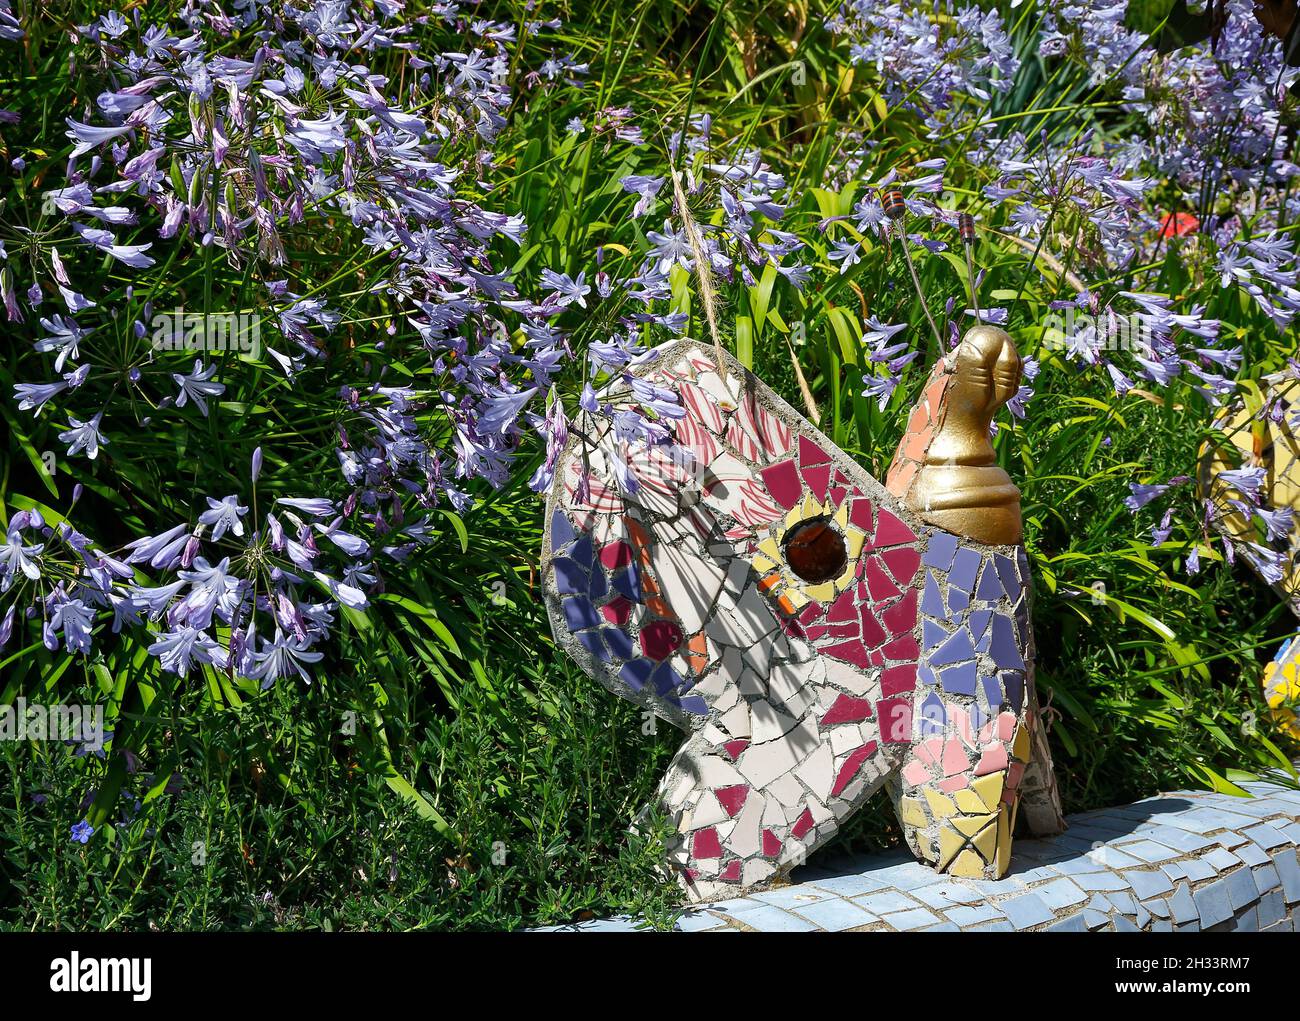 scène de jardin, grand papillon en mosaïque, fleurs violettes, morceaux de céramique, coloré,Creative, art, The Giants House, Akaroa ; Nouvelle-Zélande Banque D'Images